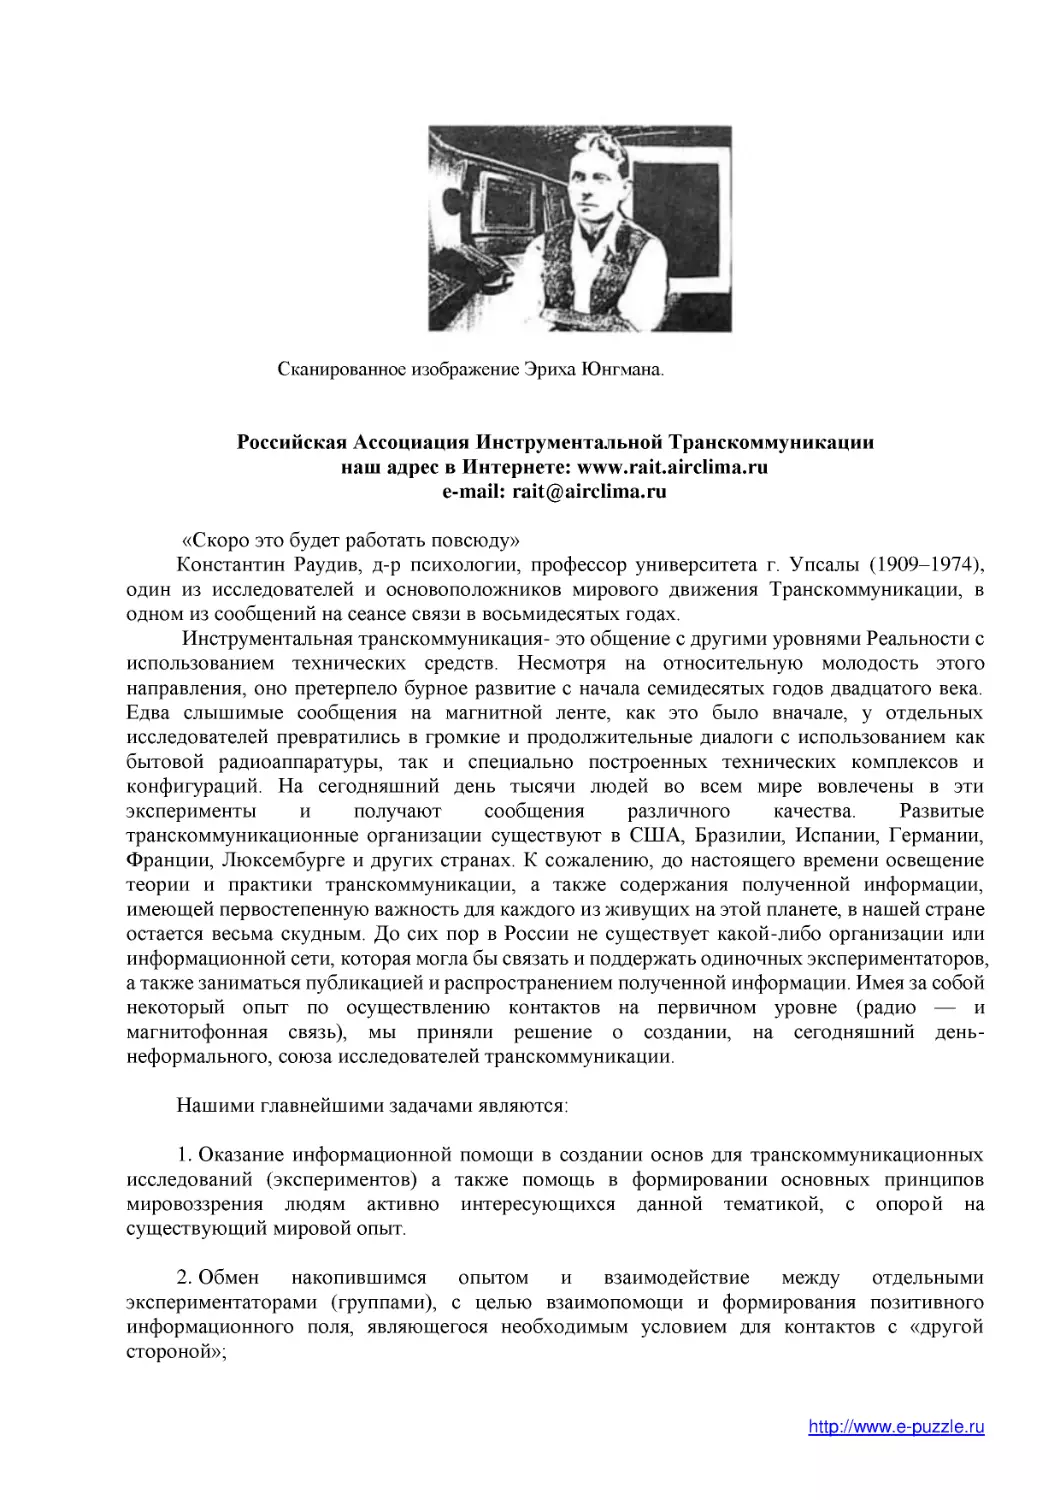 Российская Ассоциация Инструментальной Транскоммуникации
наш адрес в Интернете
e-mail